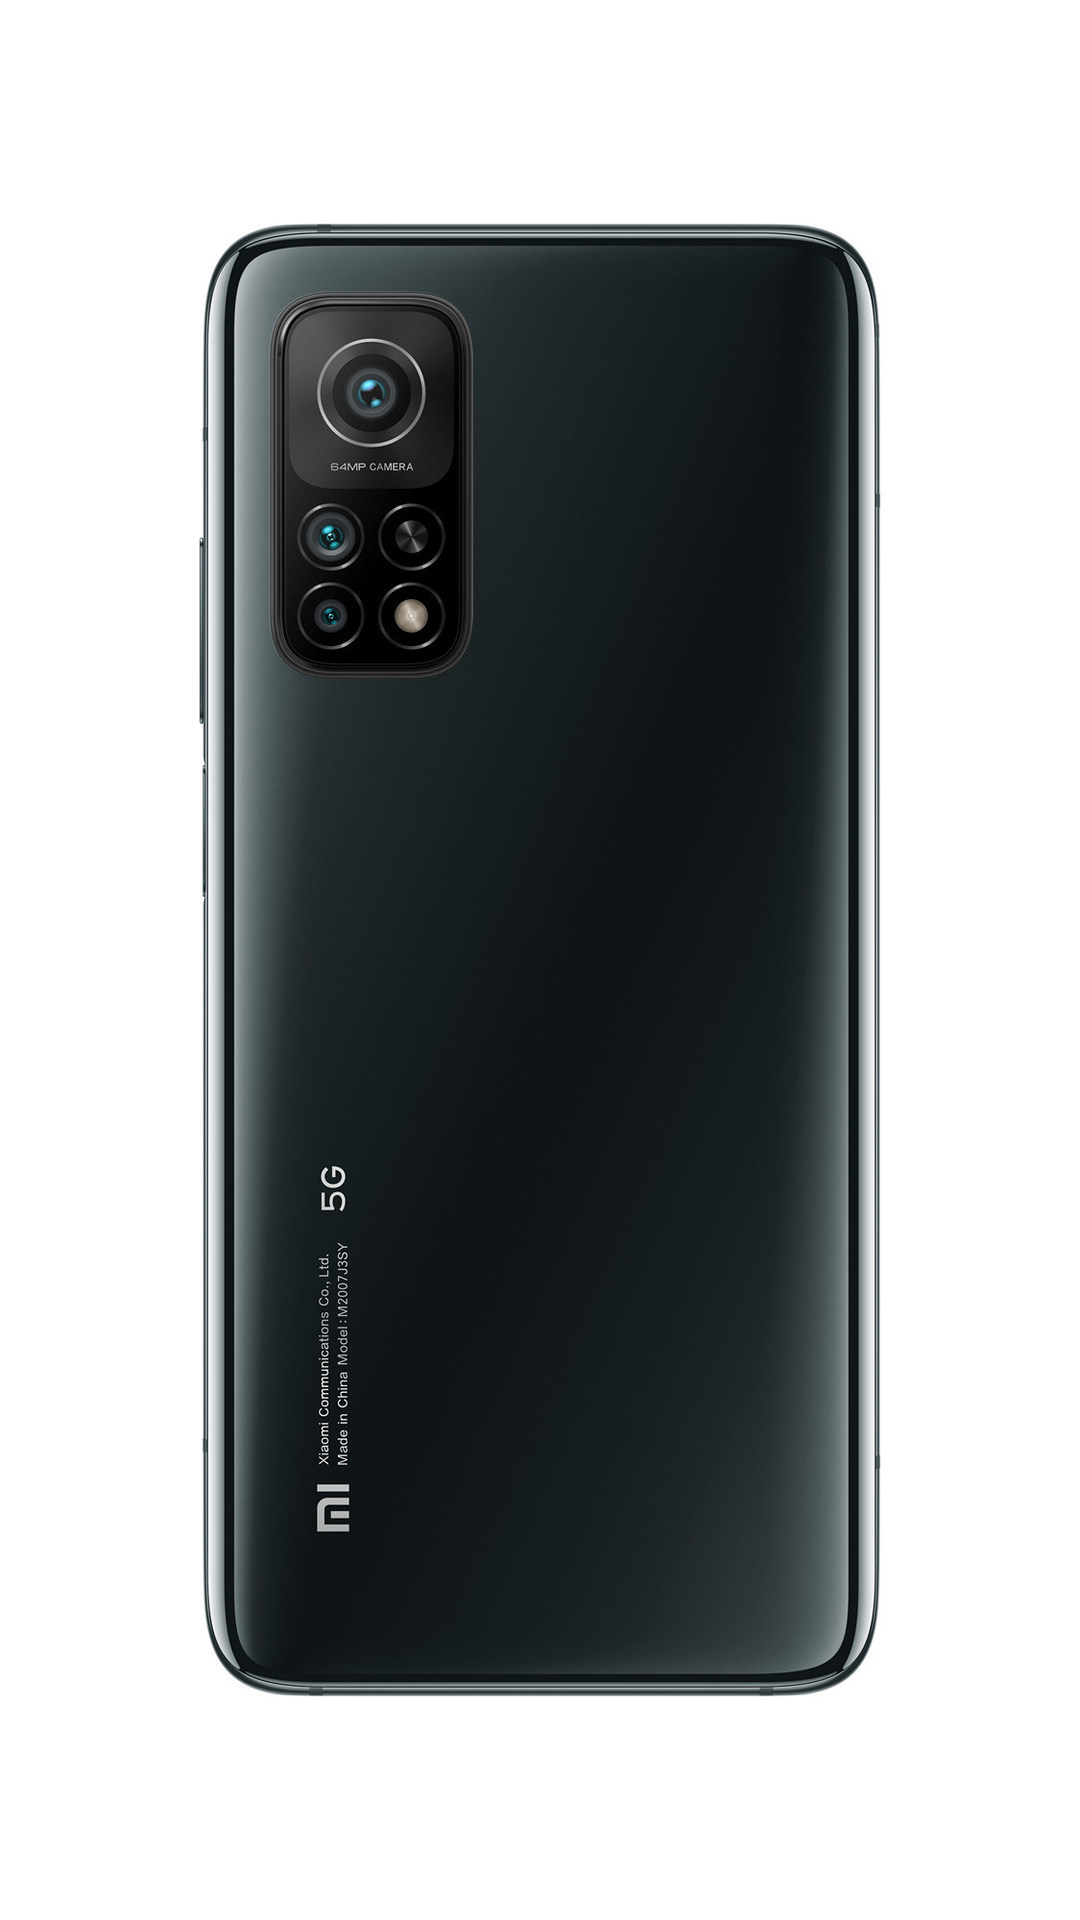 Xiaomi Mi 10T render leak showing cameras